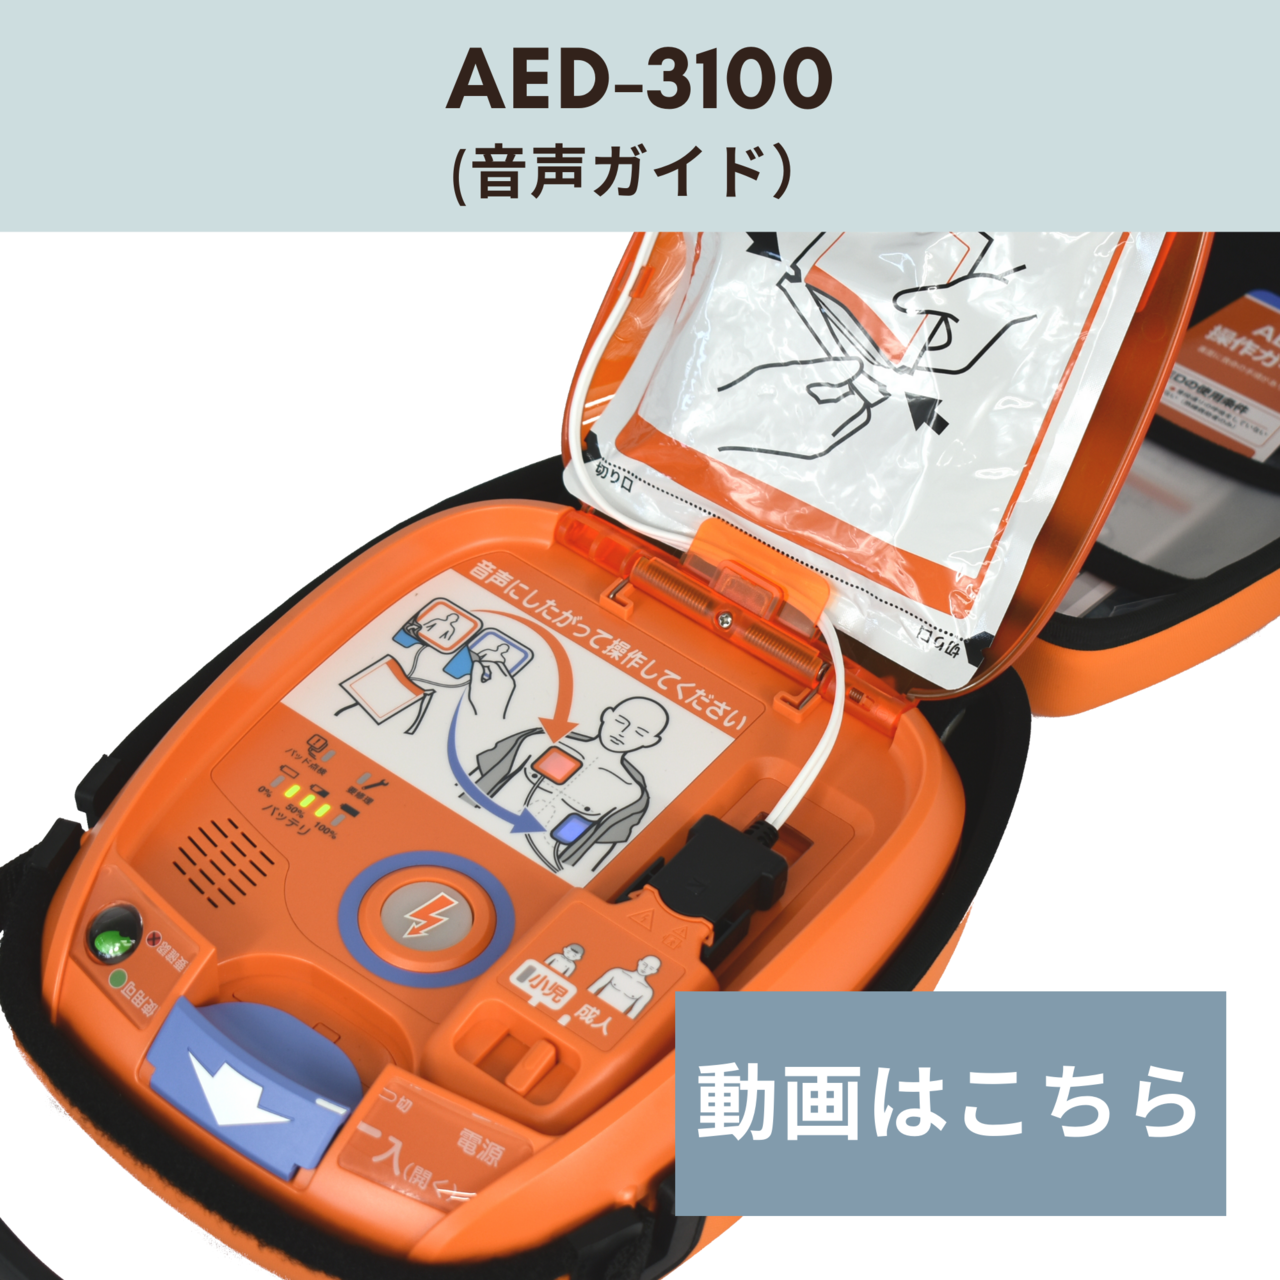 AED-3100の動画説明